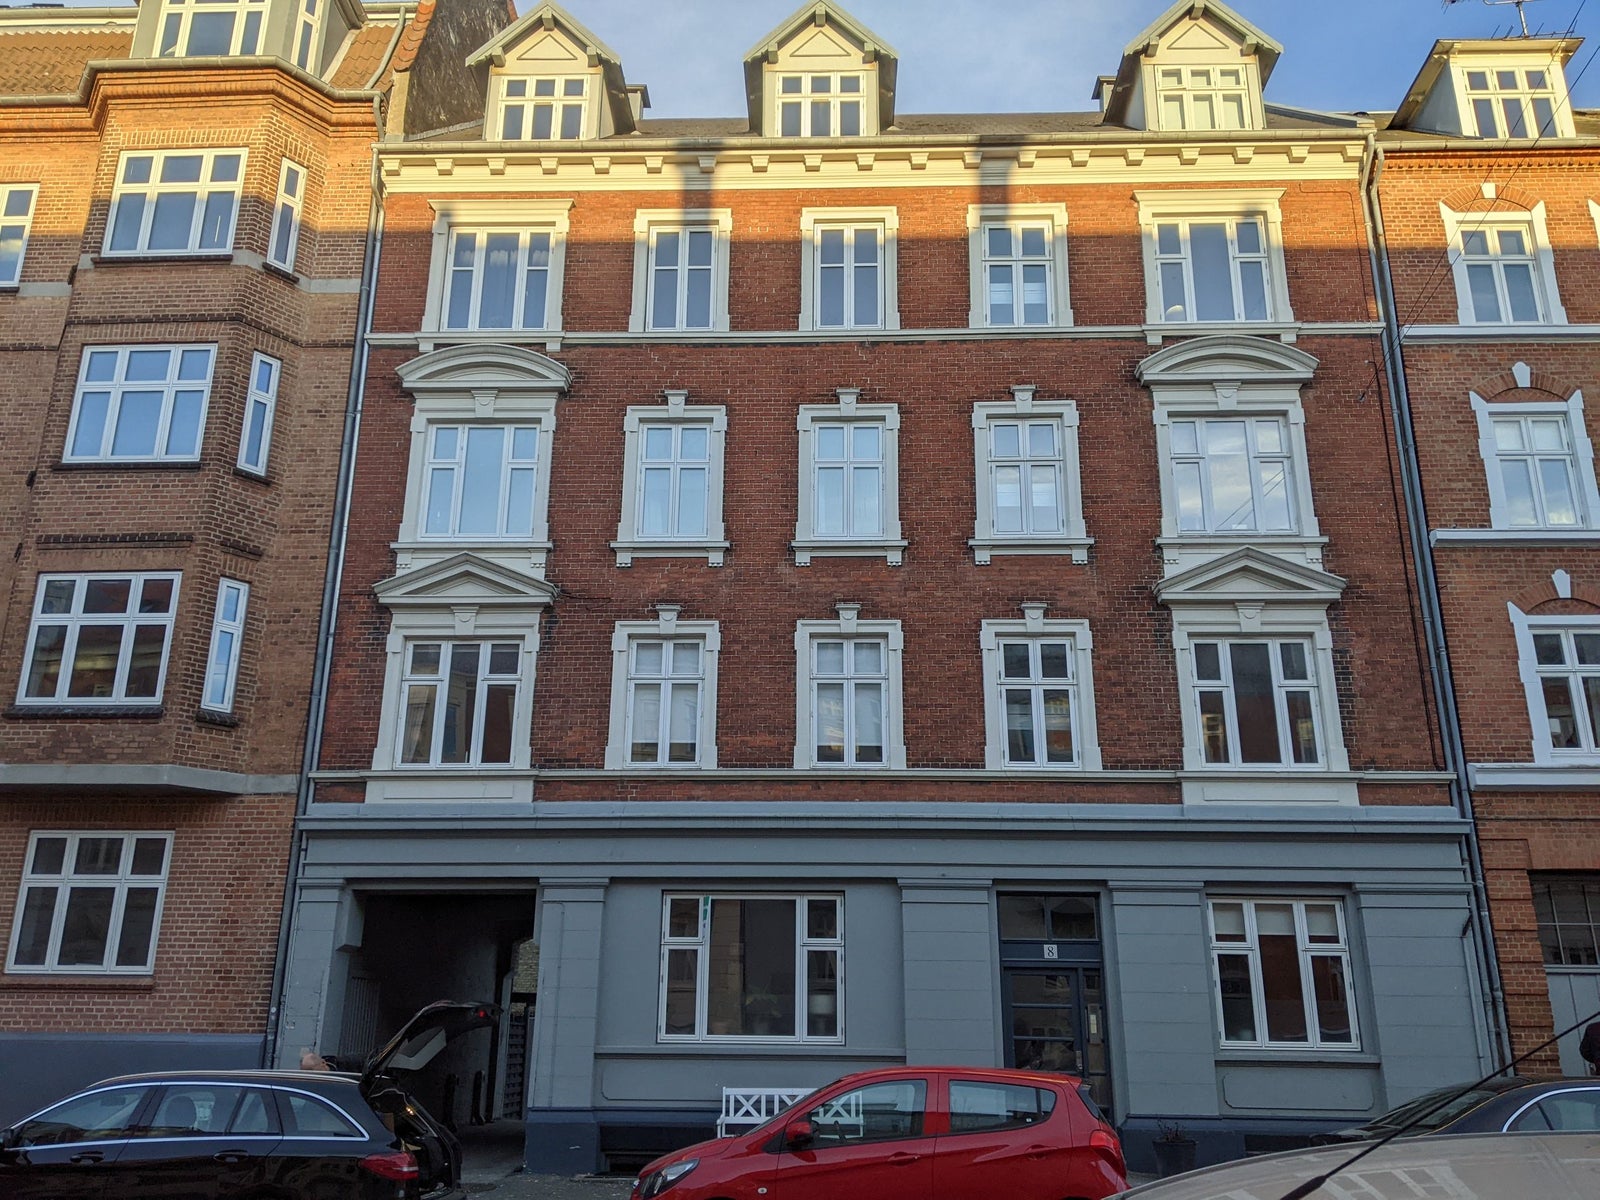 3 værelses lejlighed i Aarhus C 8000 på 78 kvm